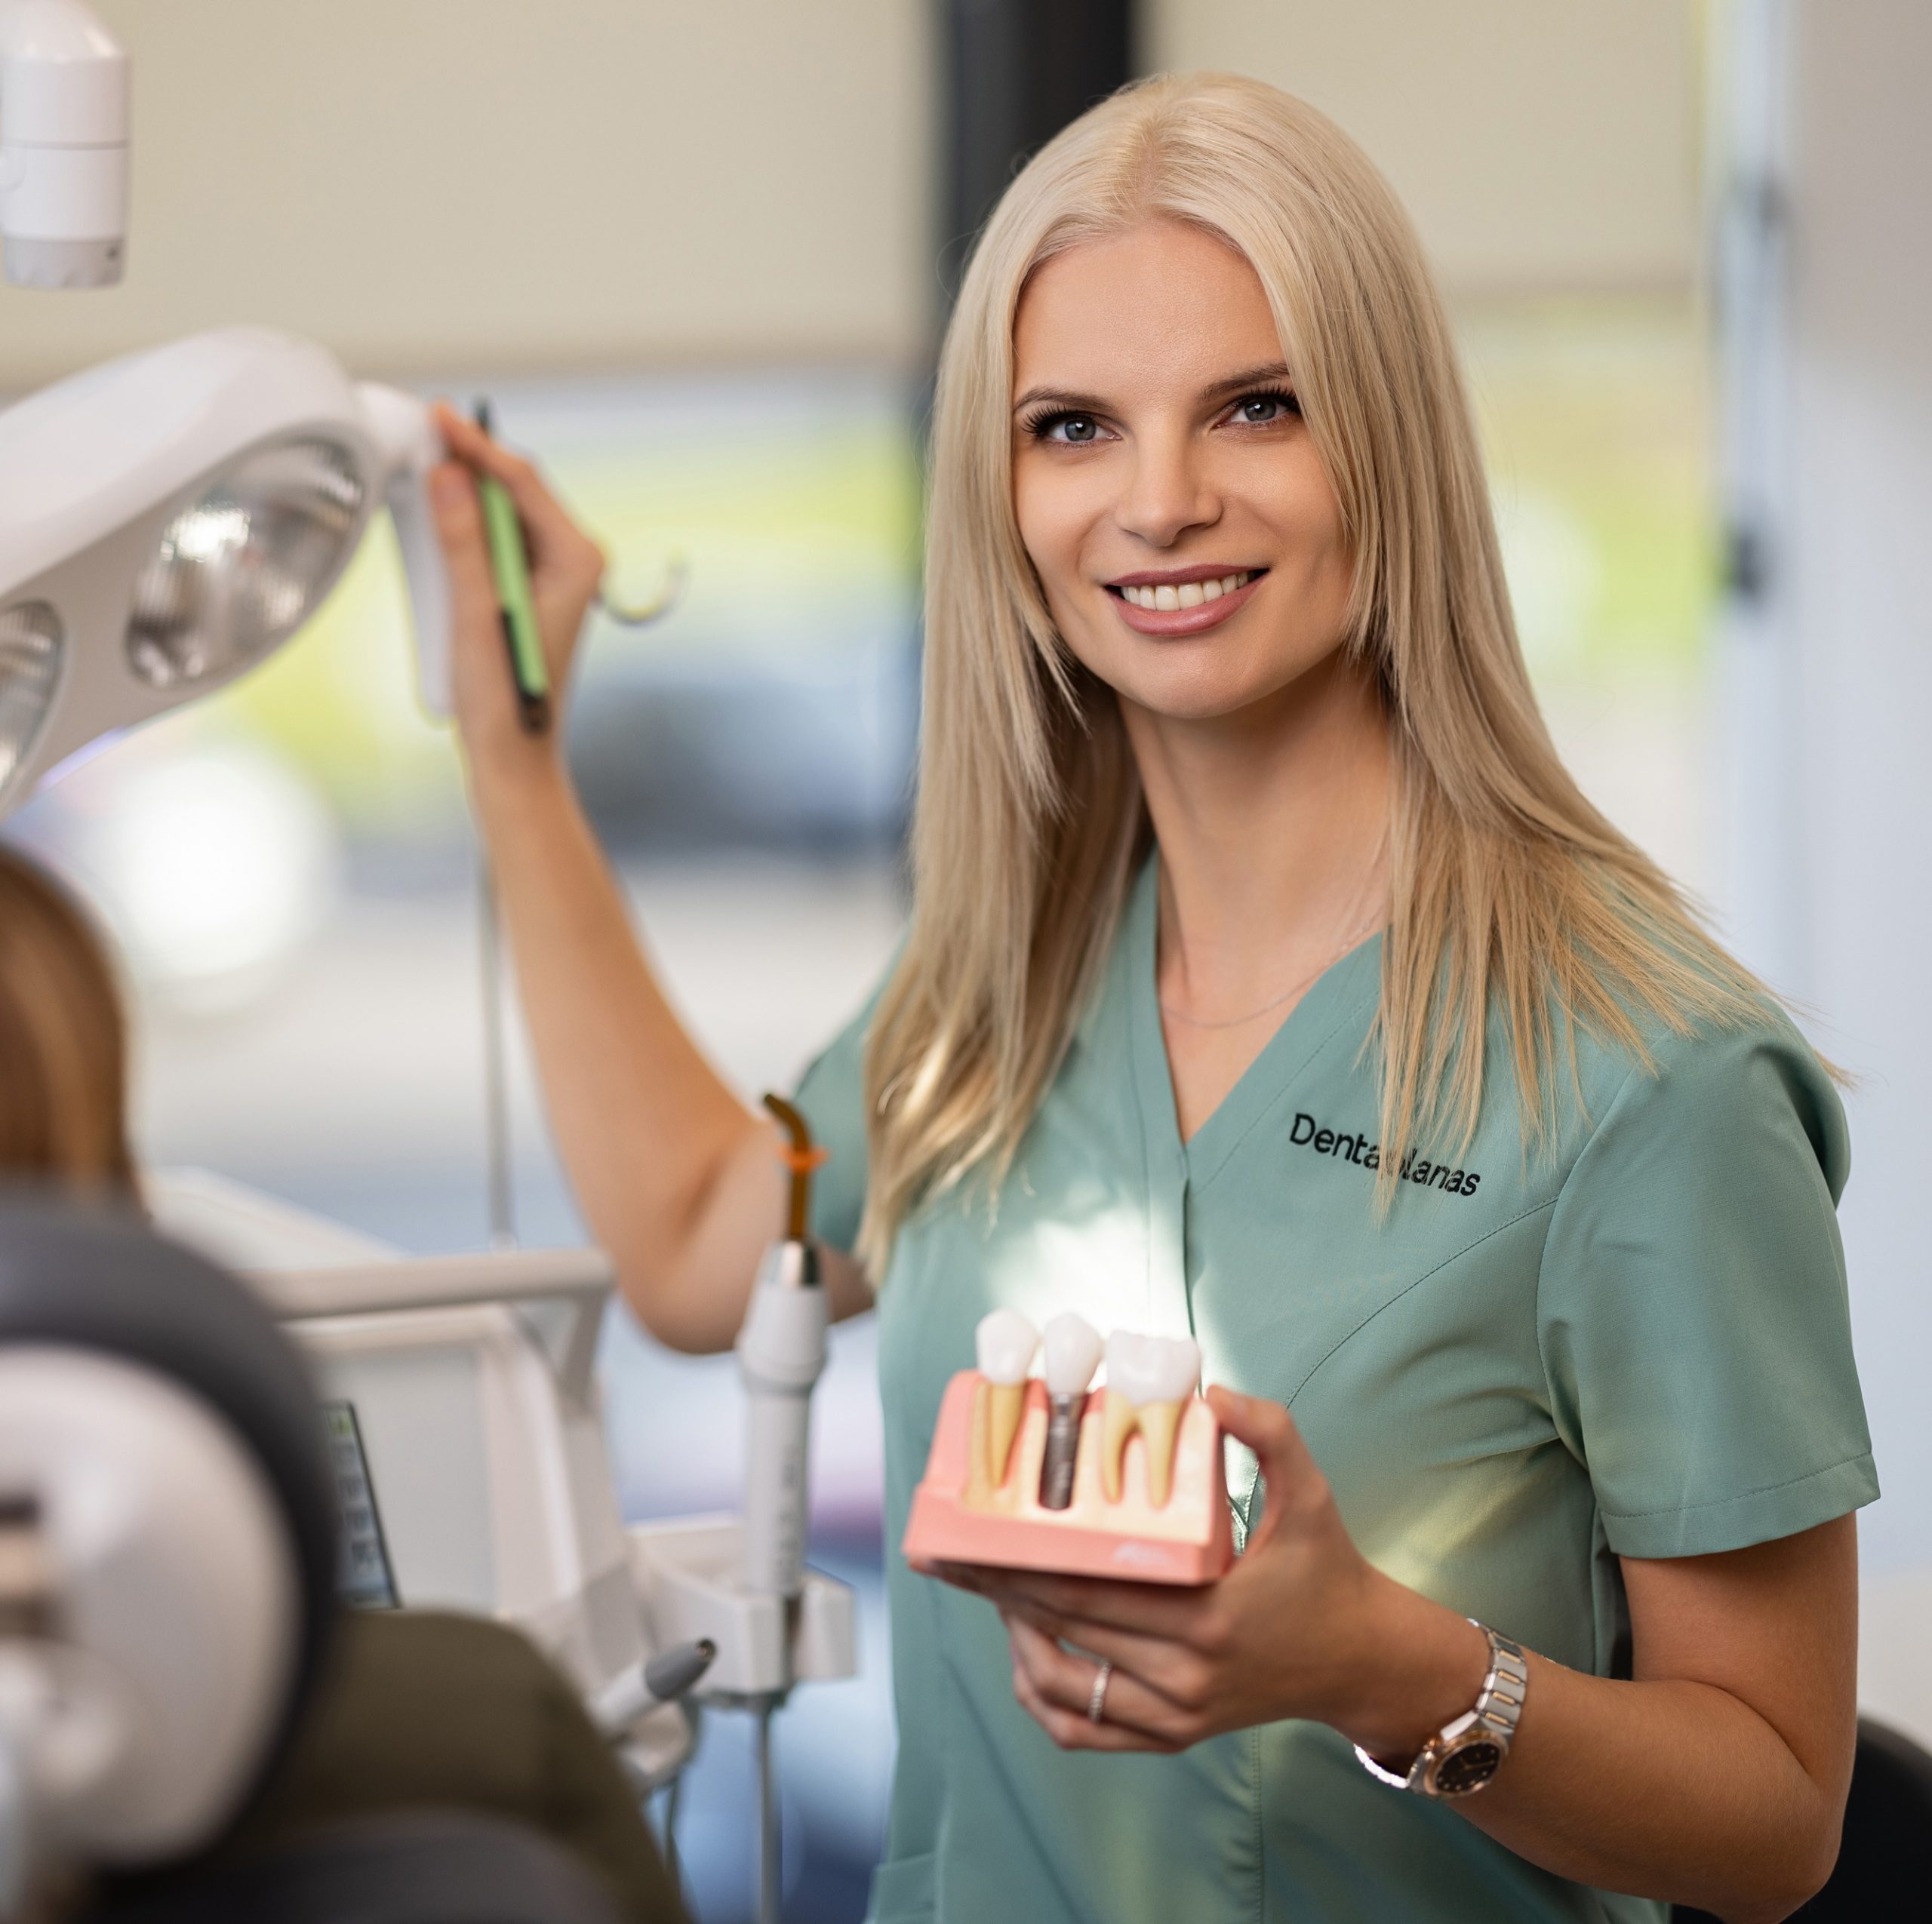 danties implantavimas kaina